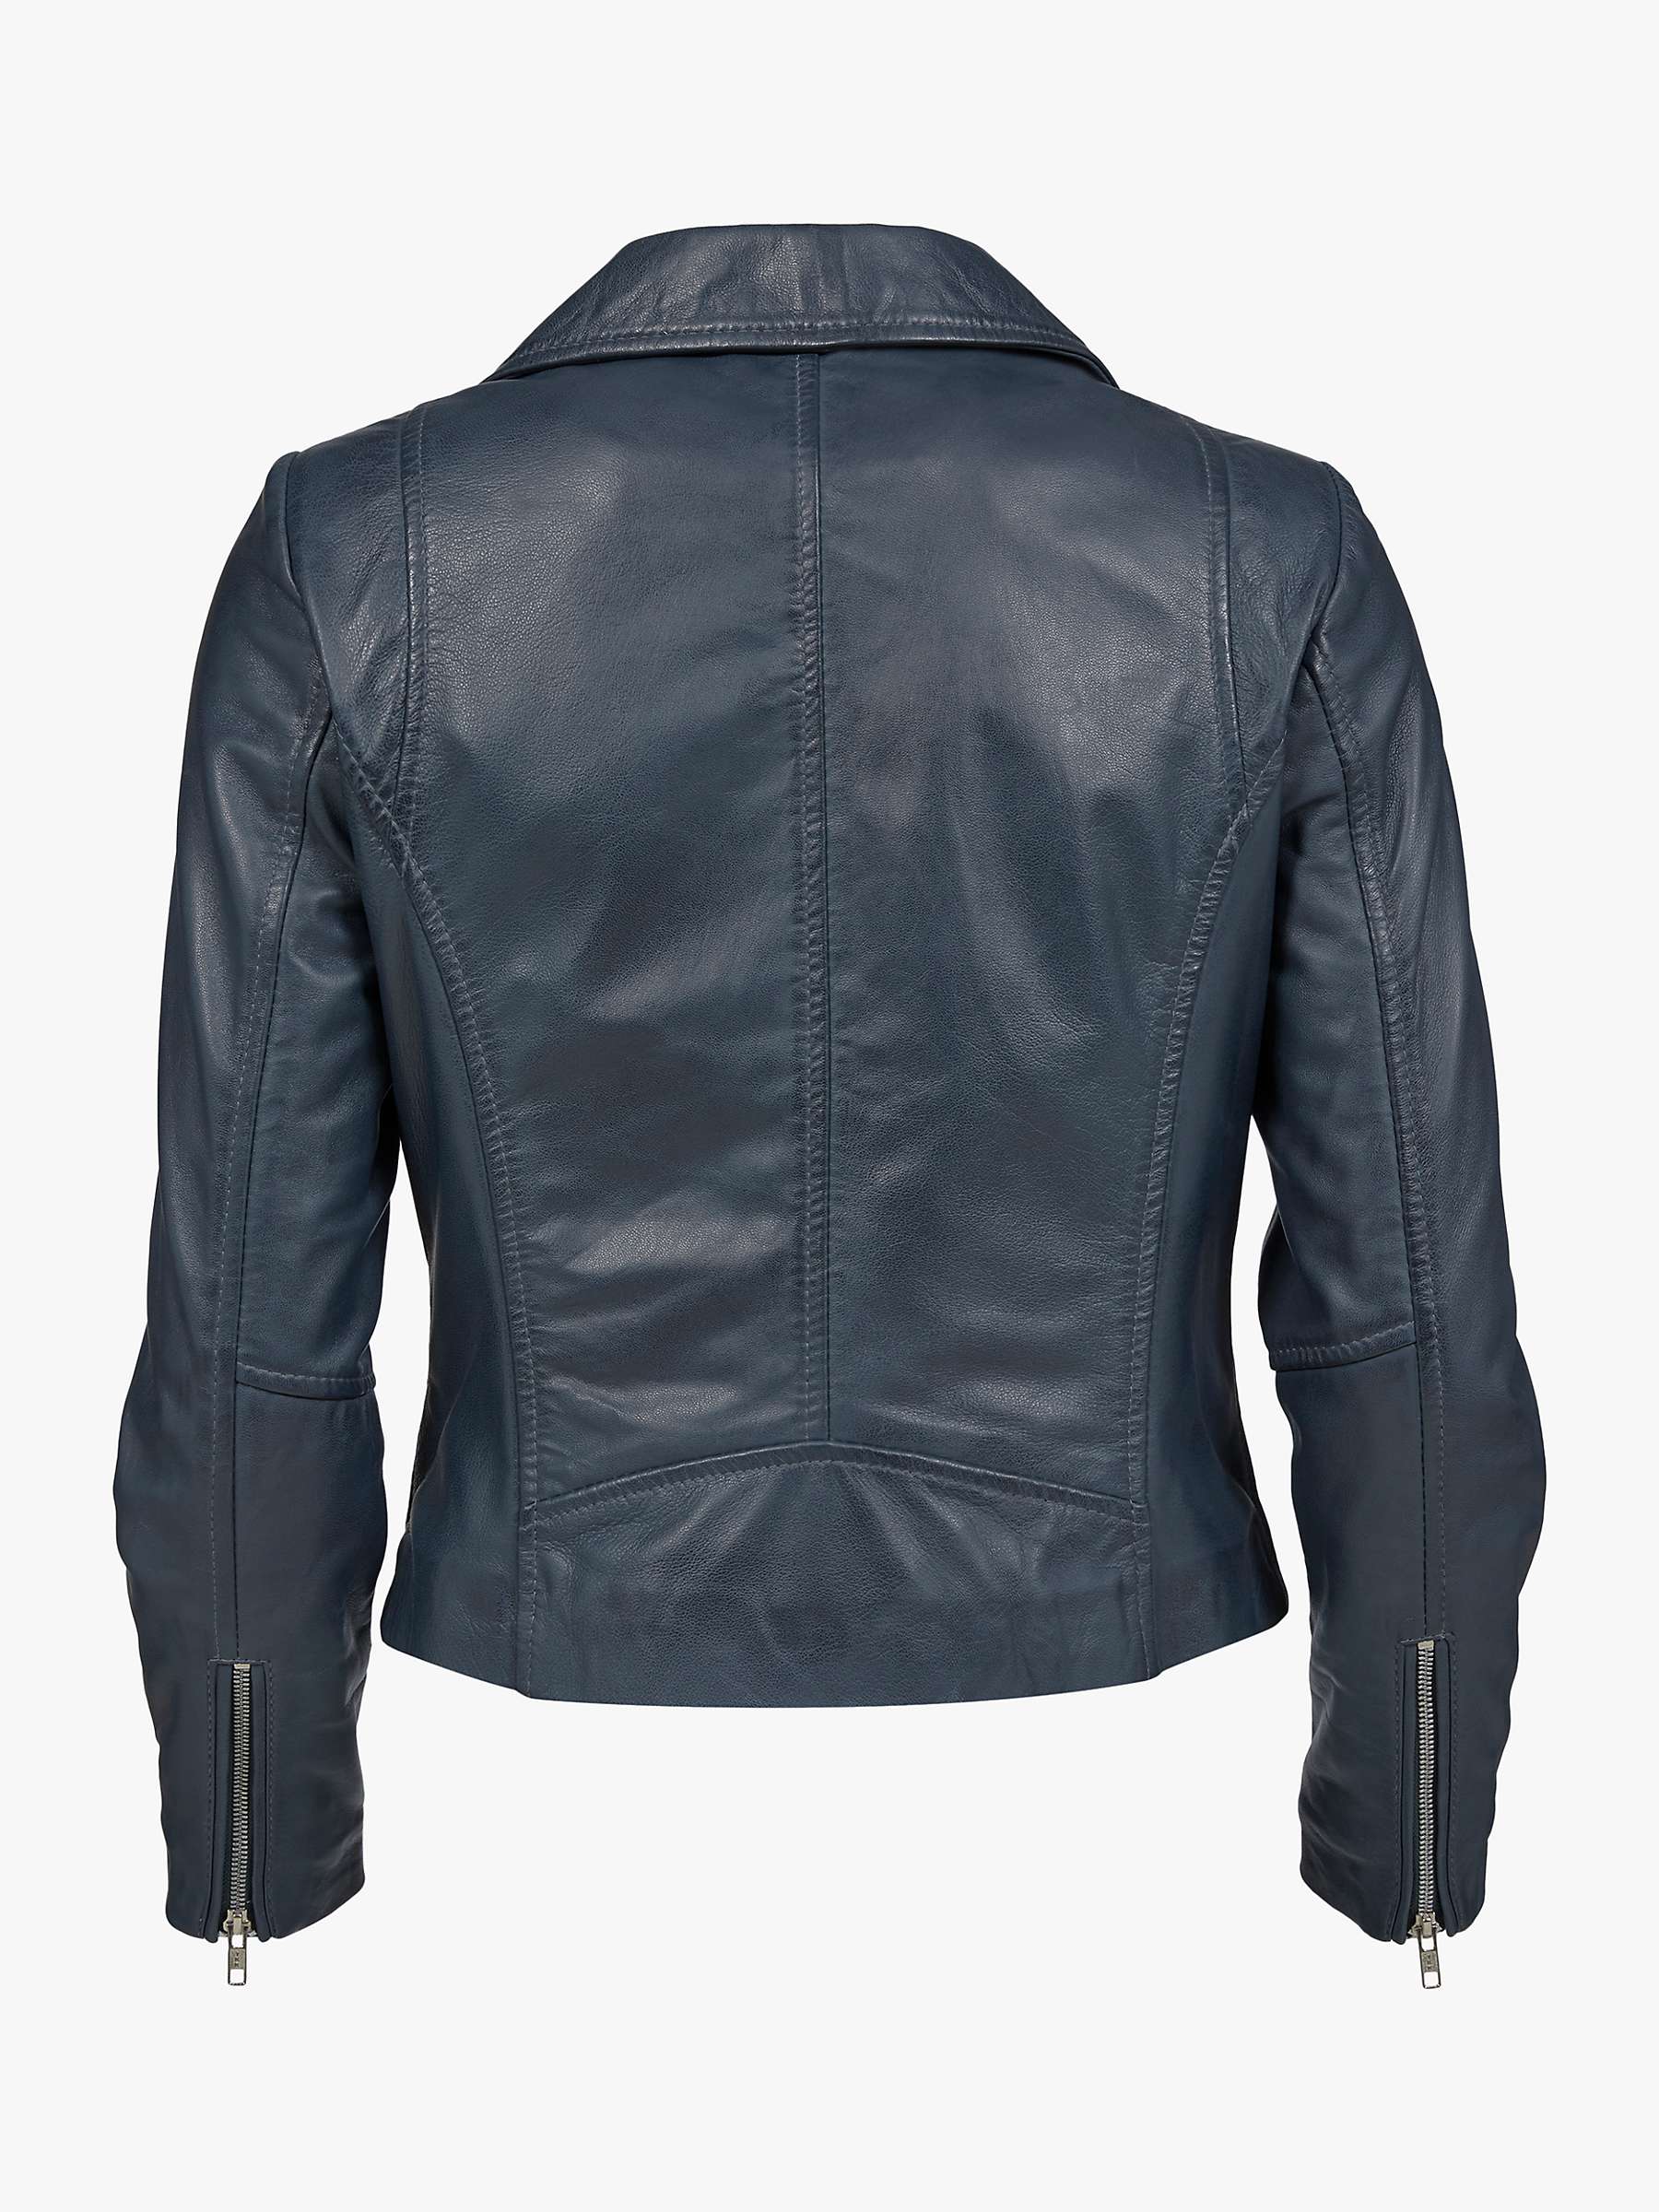 Buy Celtic & Co. Leather Biker Jacket, Indigo Online at johnlewis.com